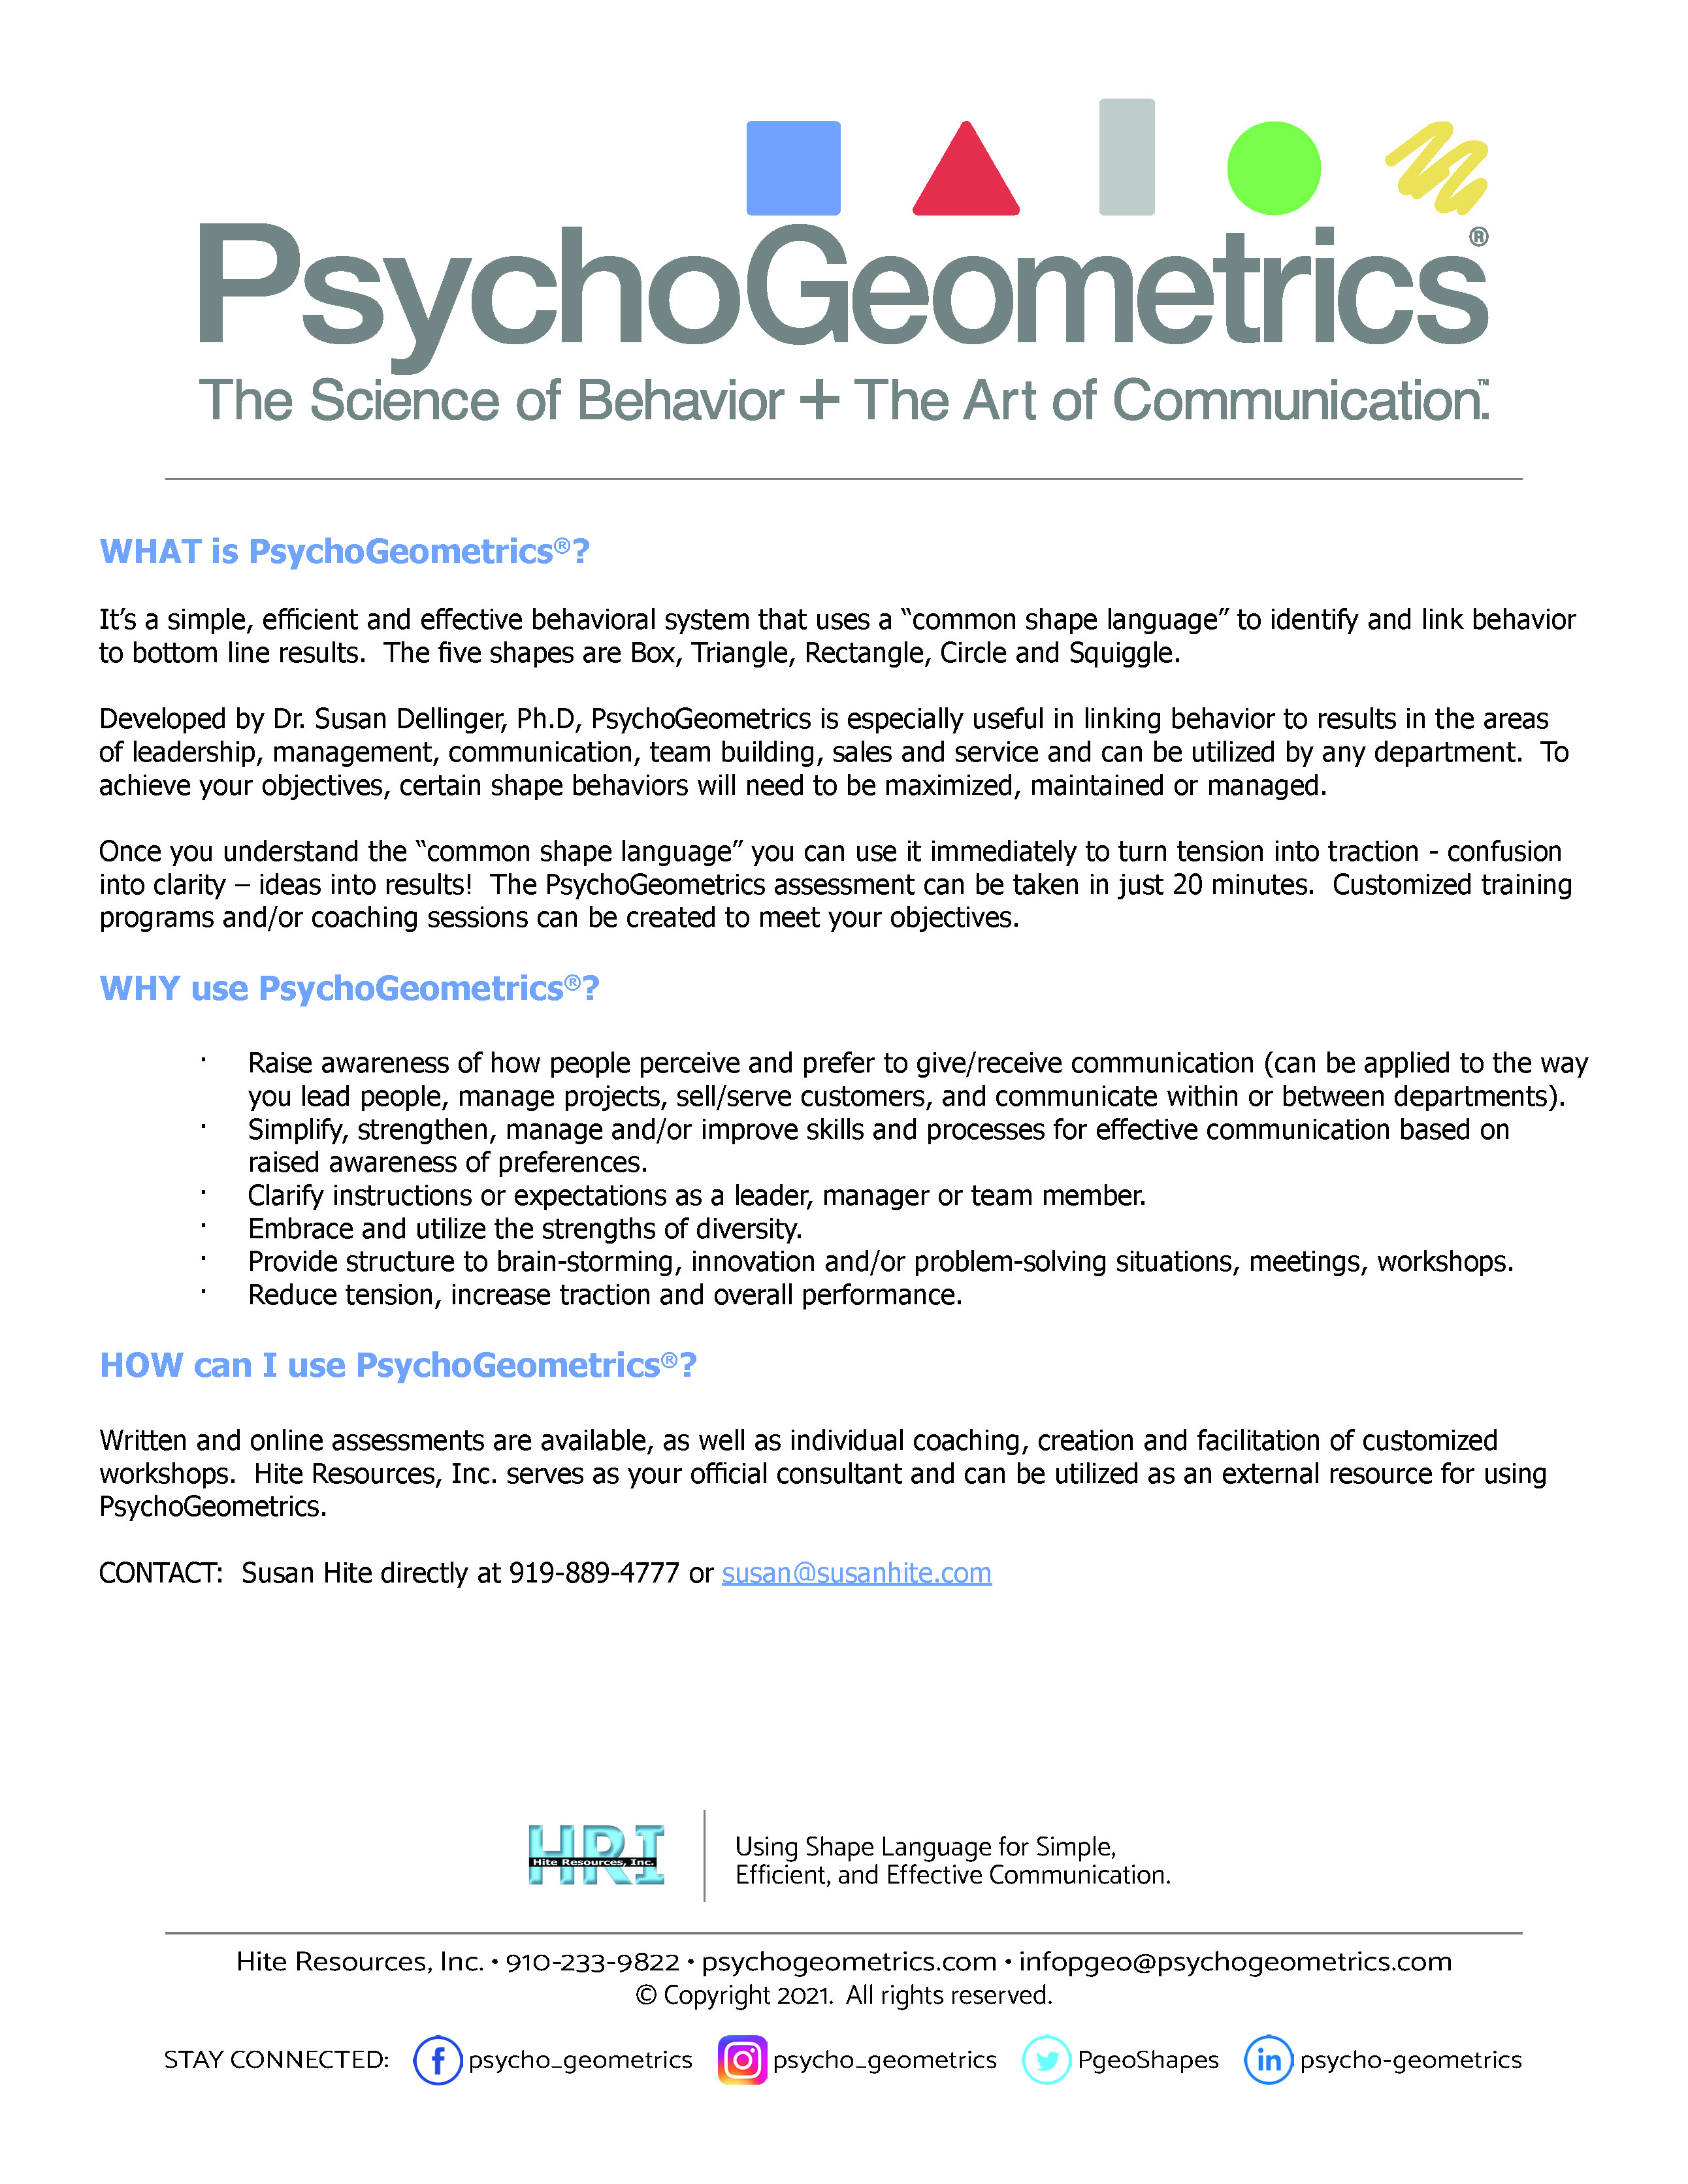 What Why How of PsychoGeometrics